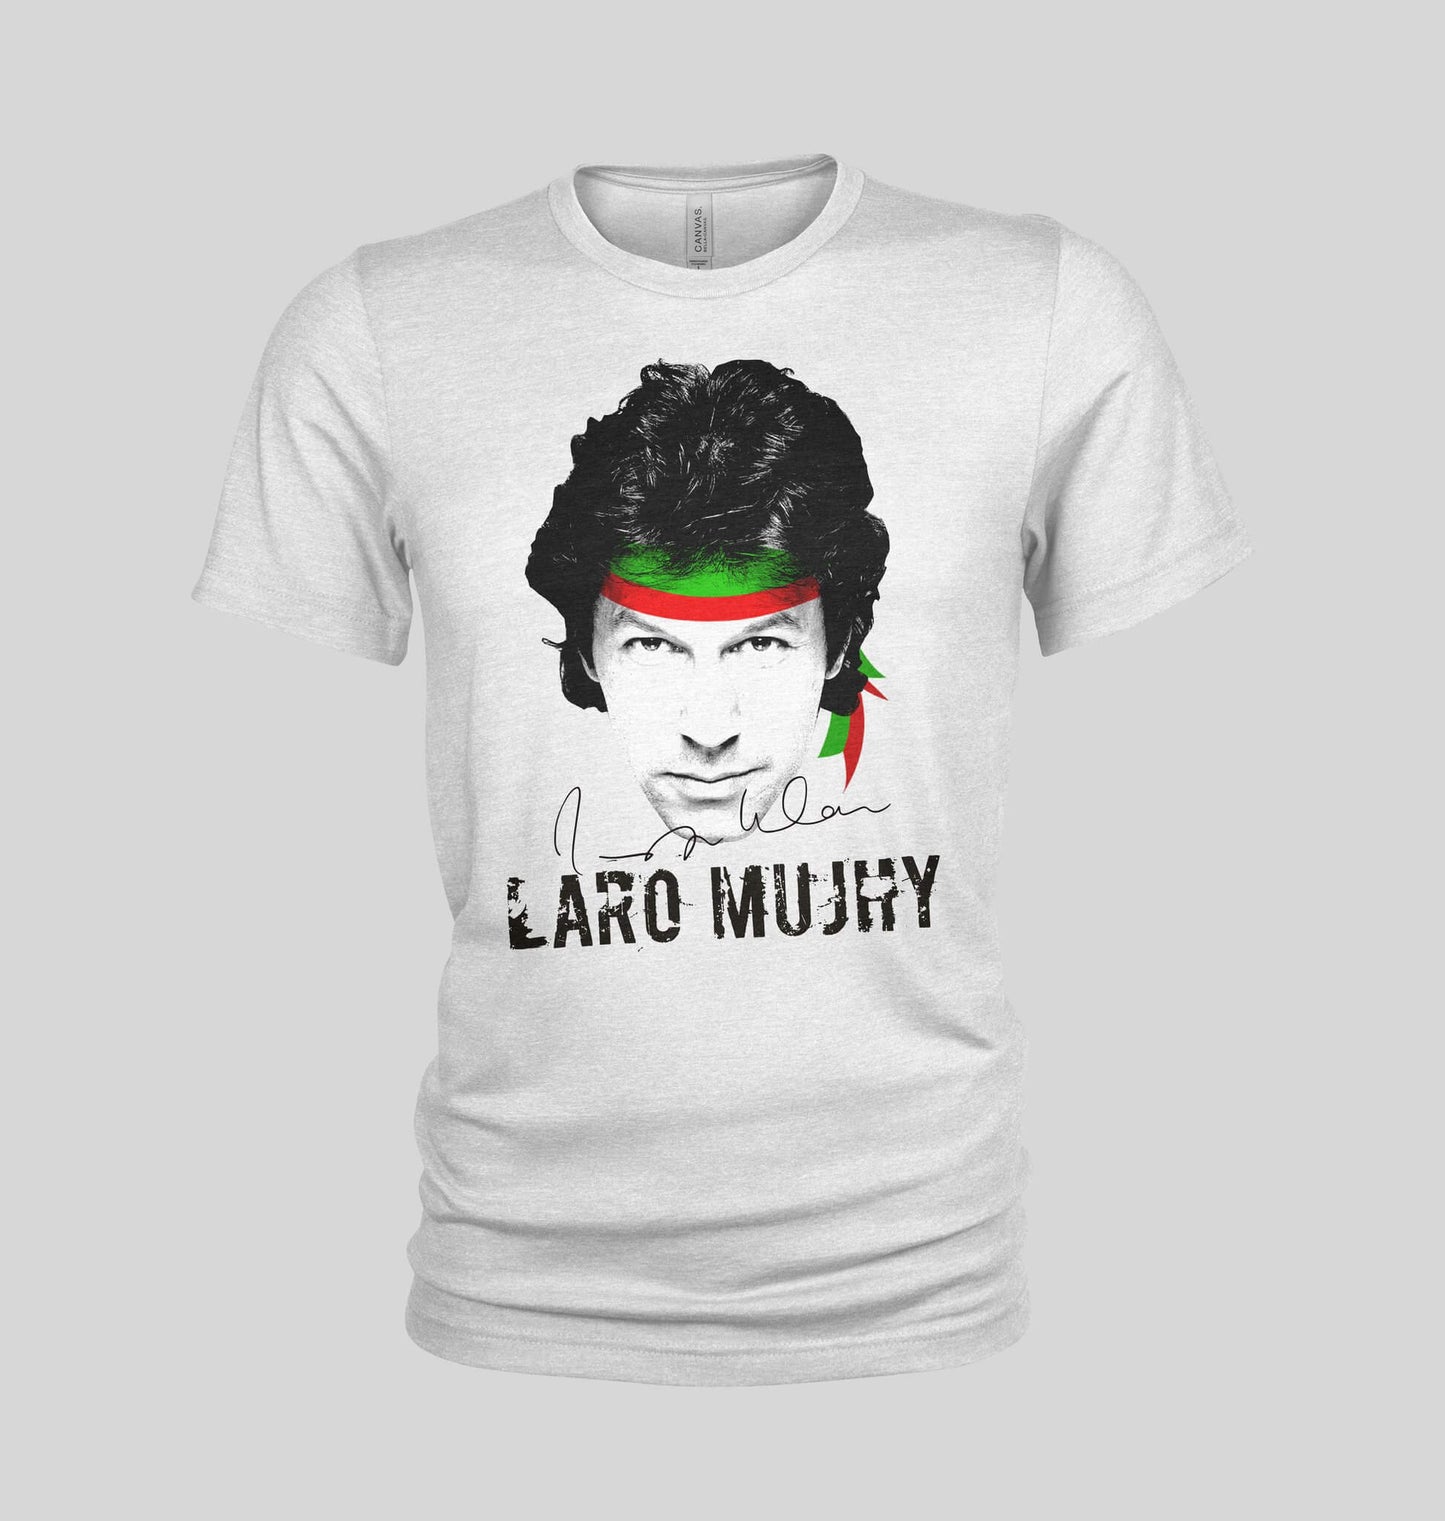 Laro Mujhay T-Shirt